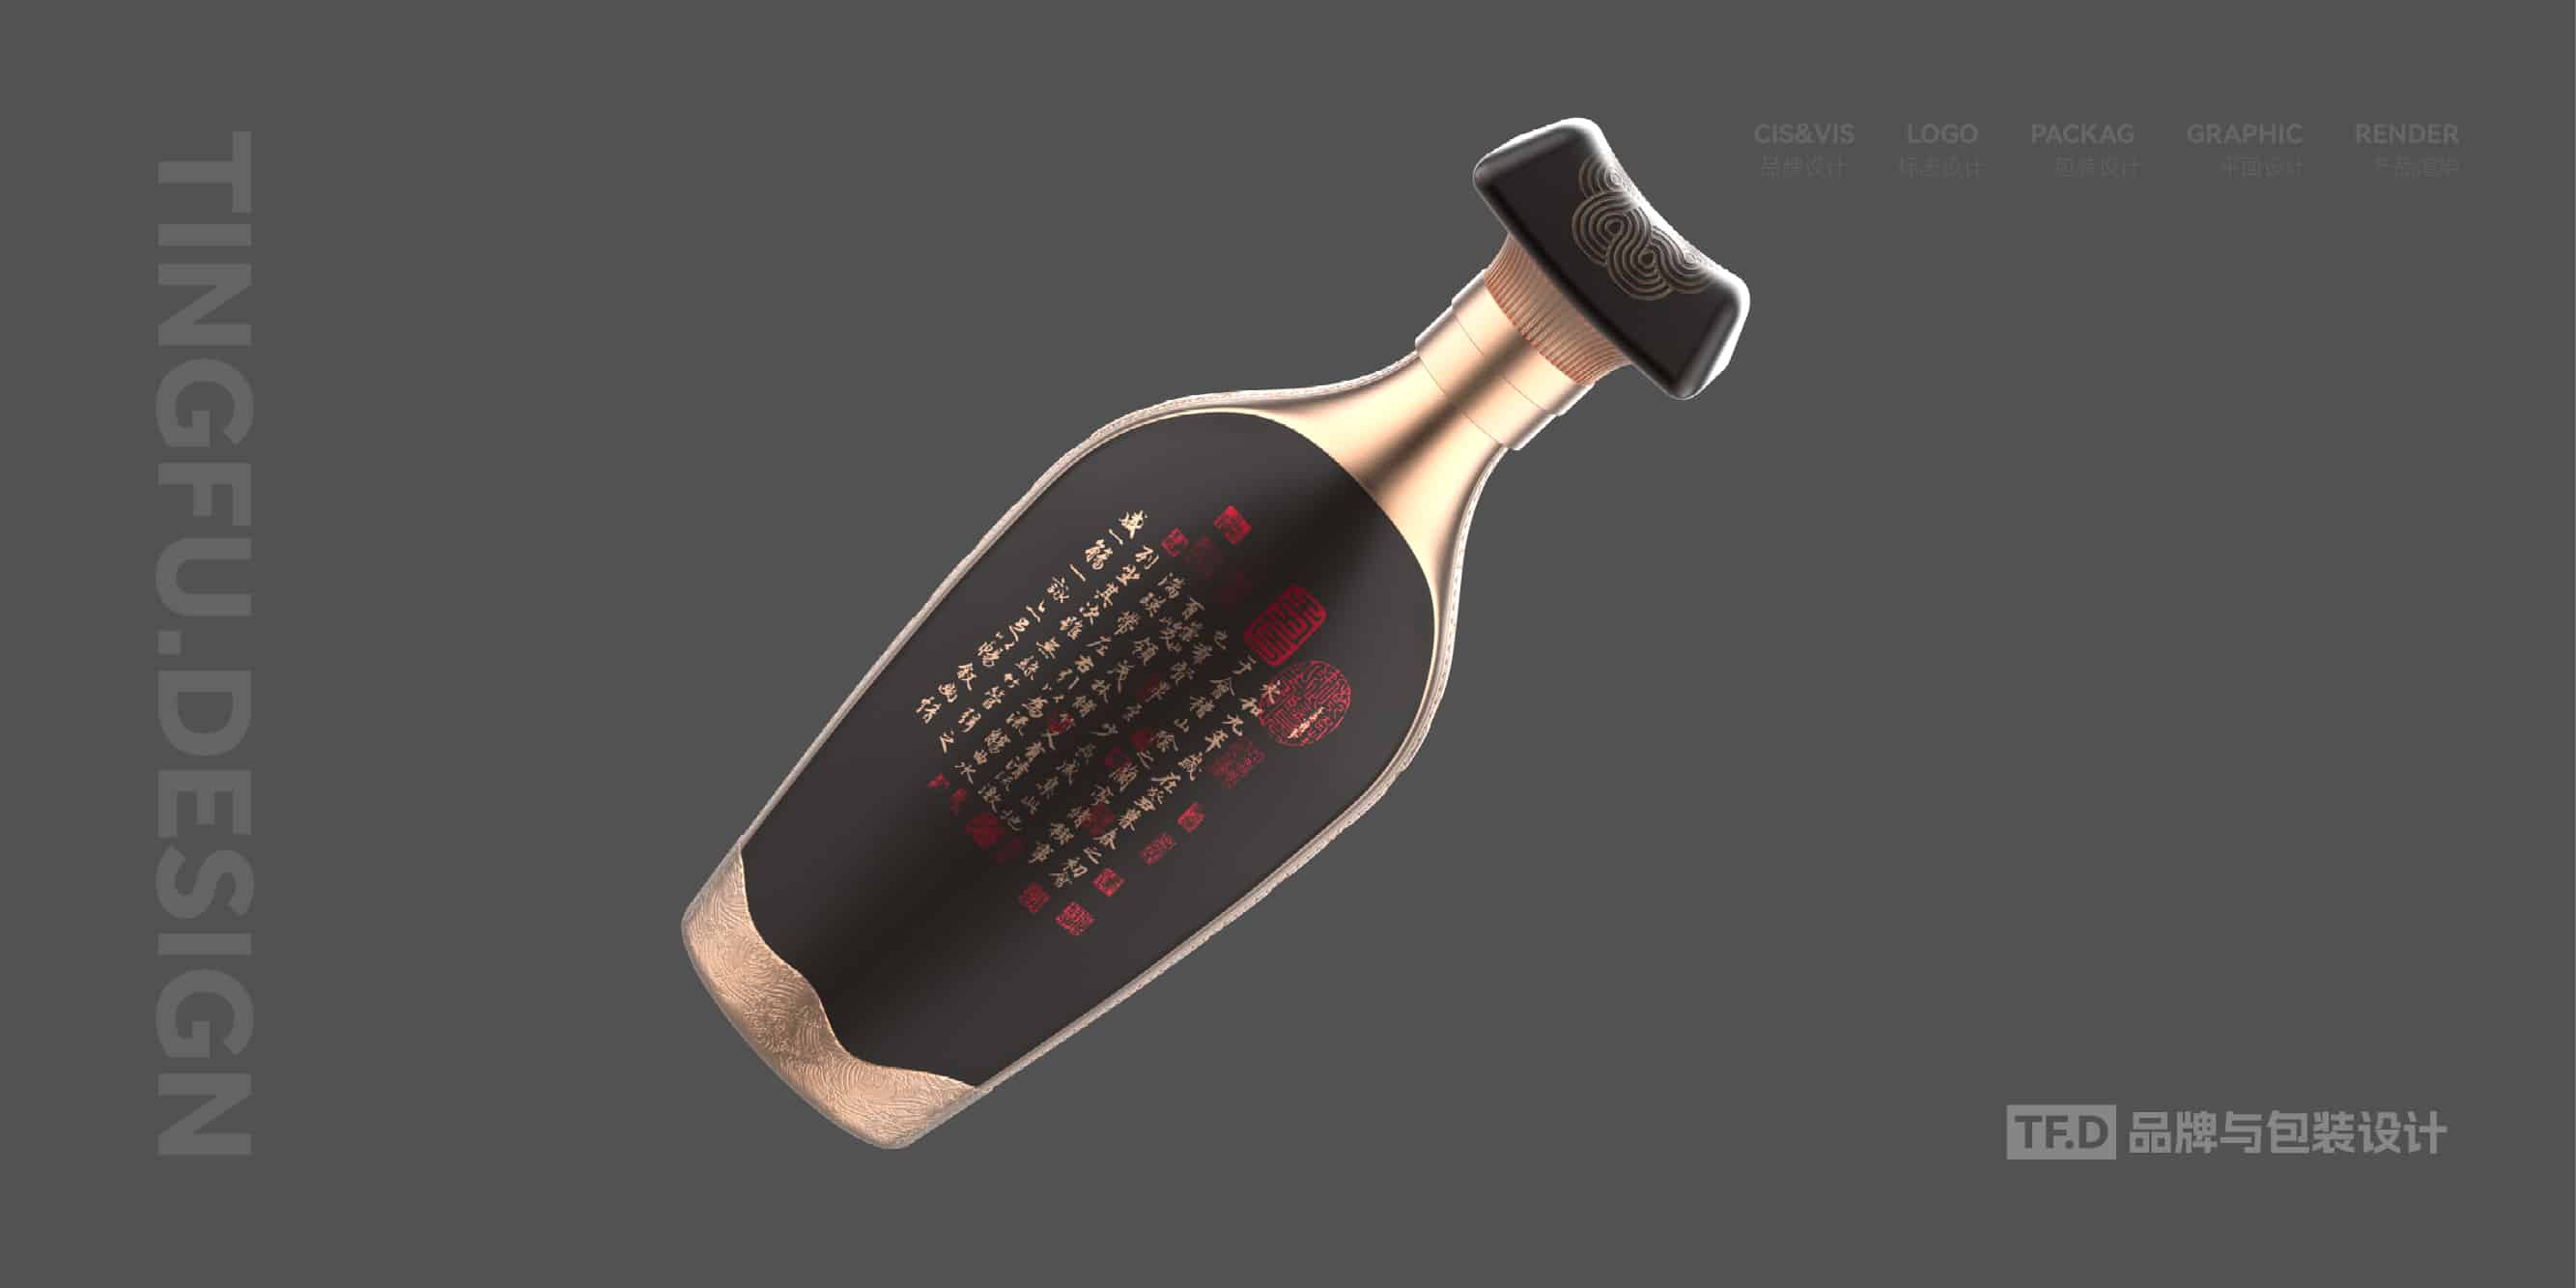 TFD品牌与包装设计-部分酒包装设计案例42-tuya.jpg